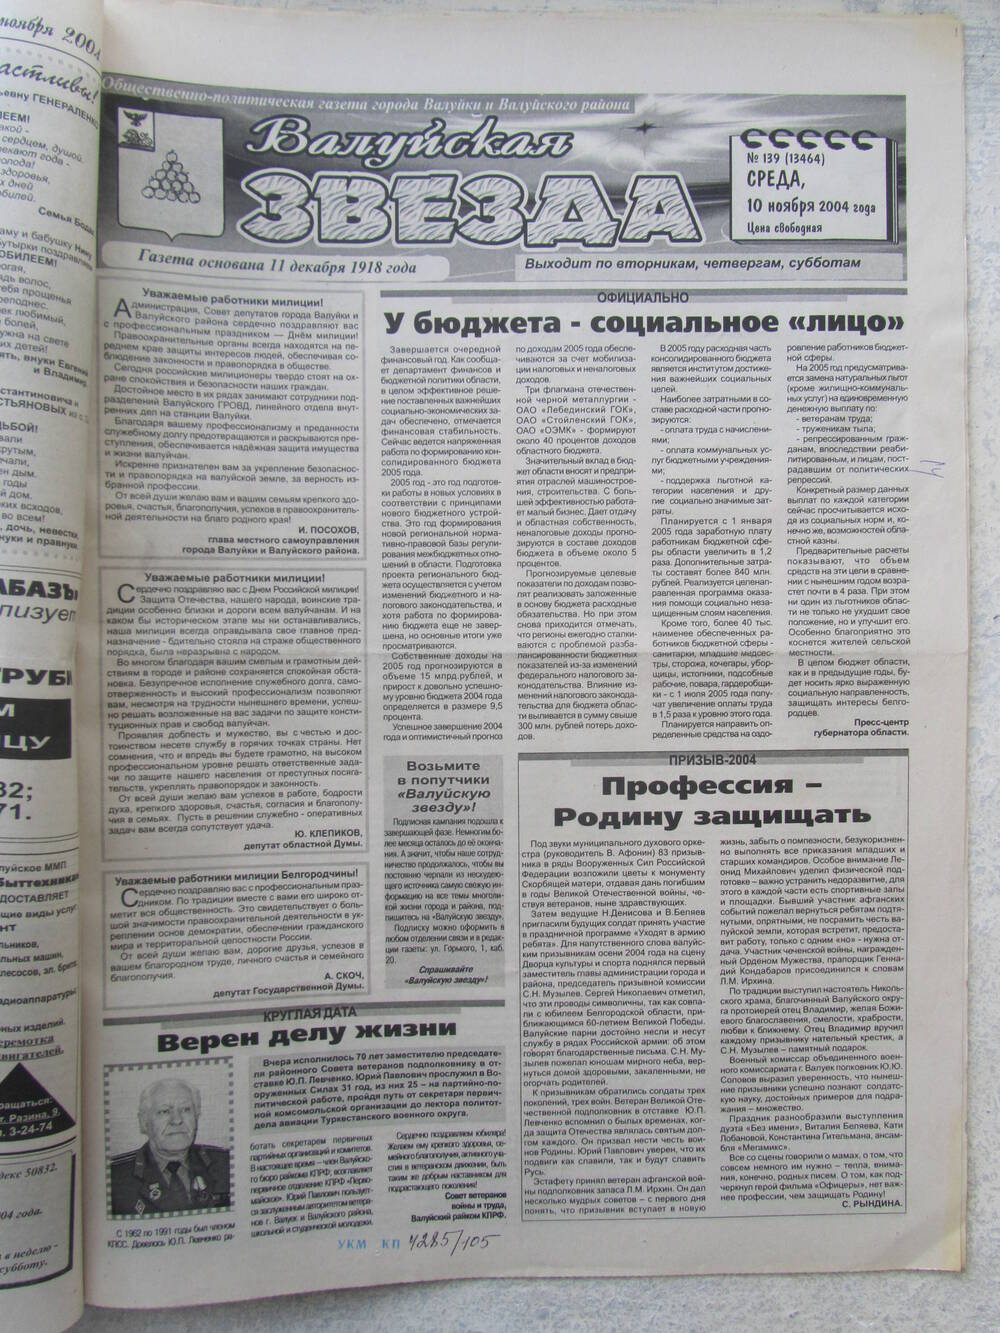 Газета Валуйская звезда №139 от 10.11.2004 г